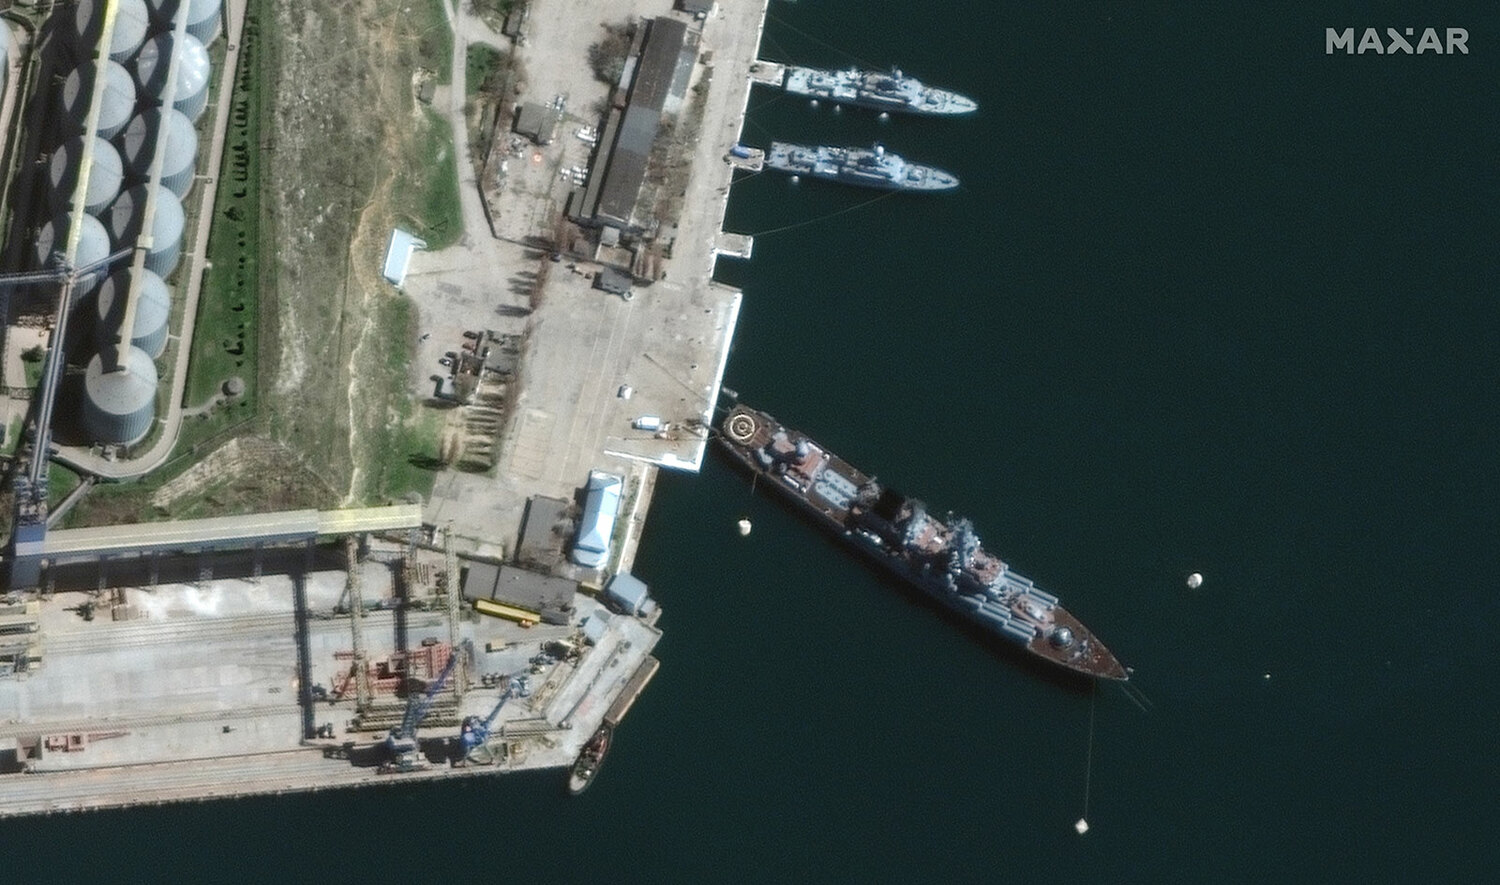 二戰後被擊沉的最大水面戰艦? 俄黑海旗艦莫斯科號受重創 全員棄船逃命